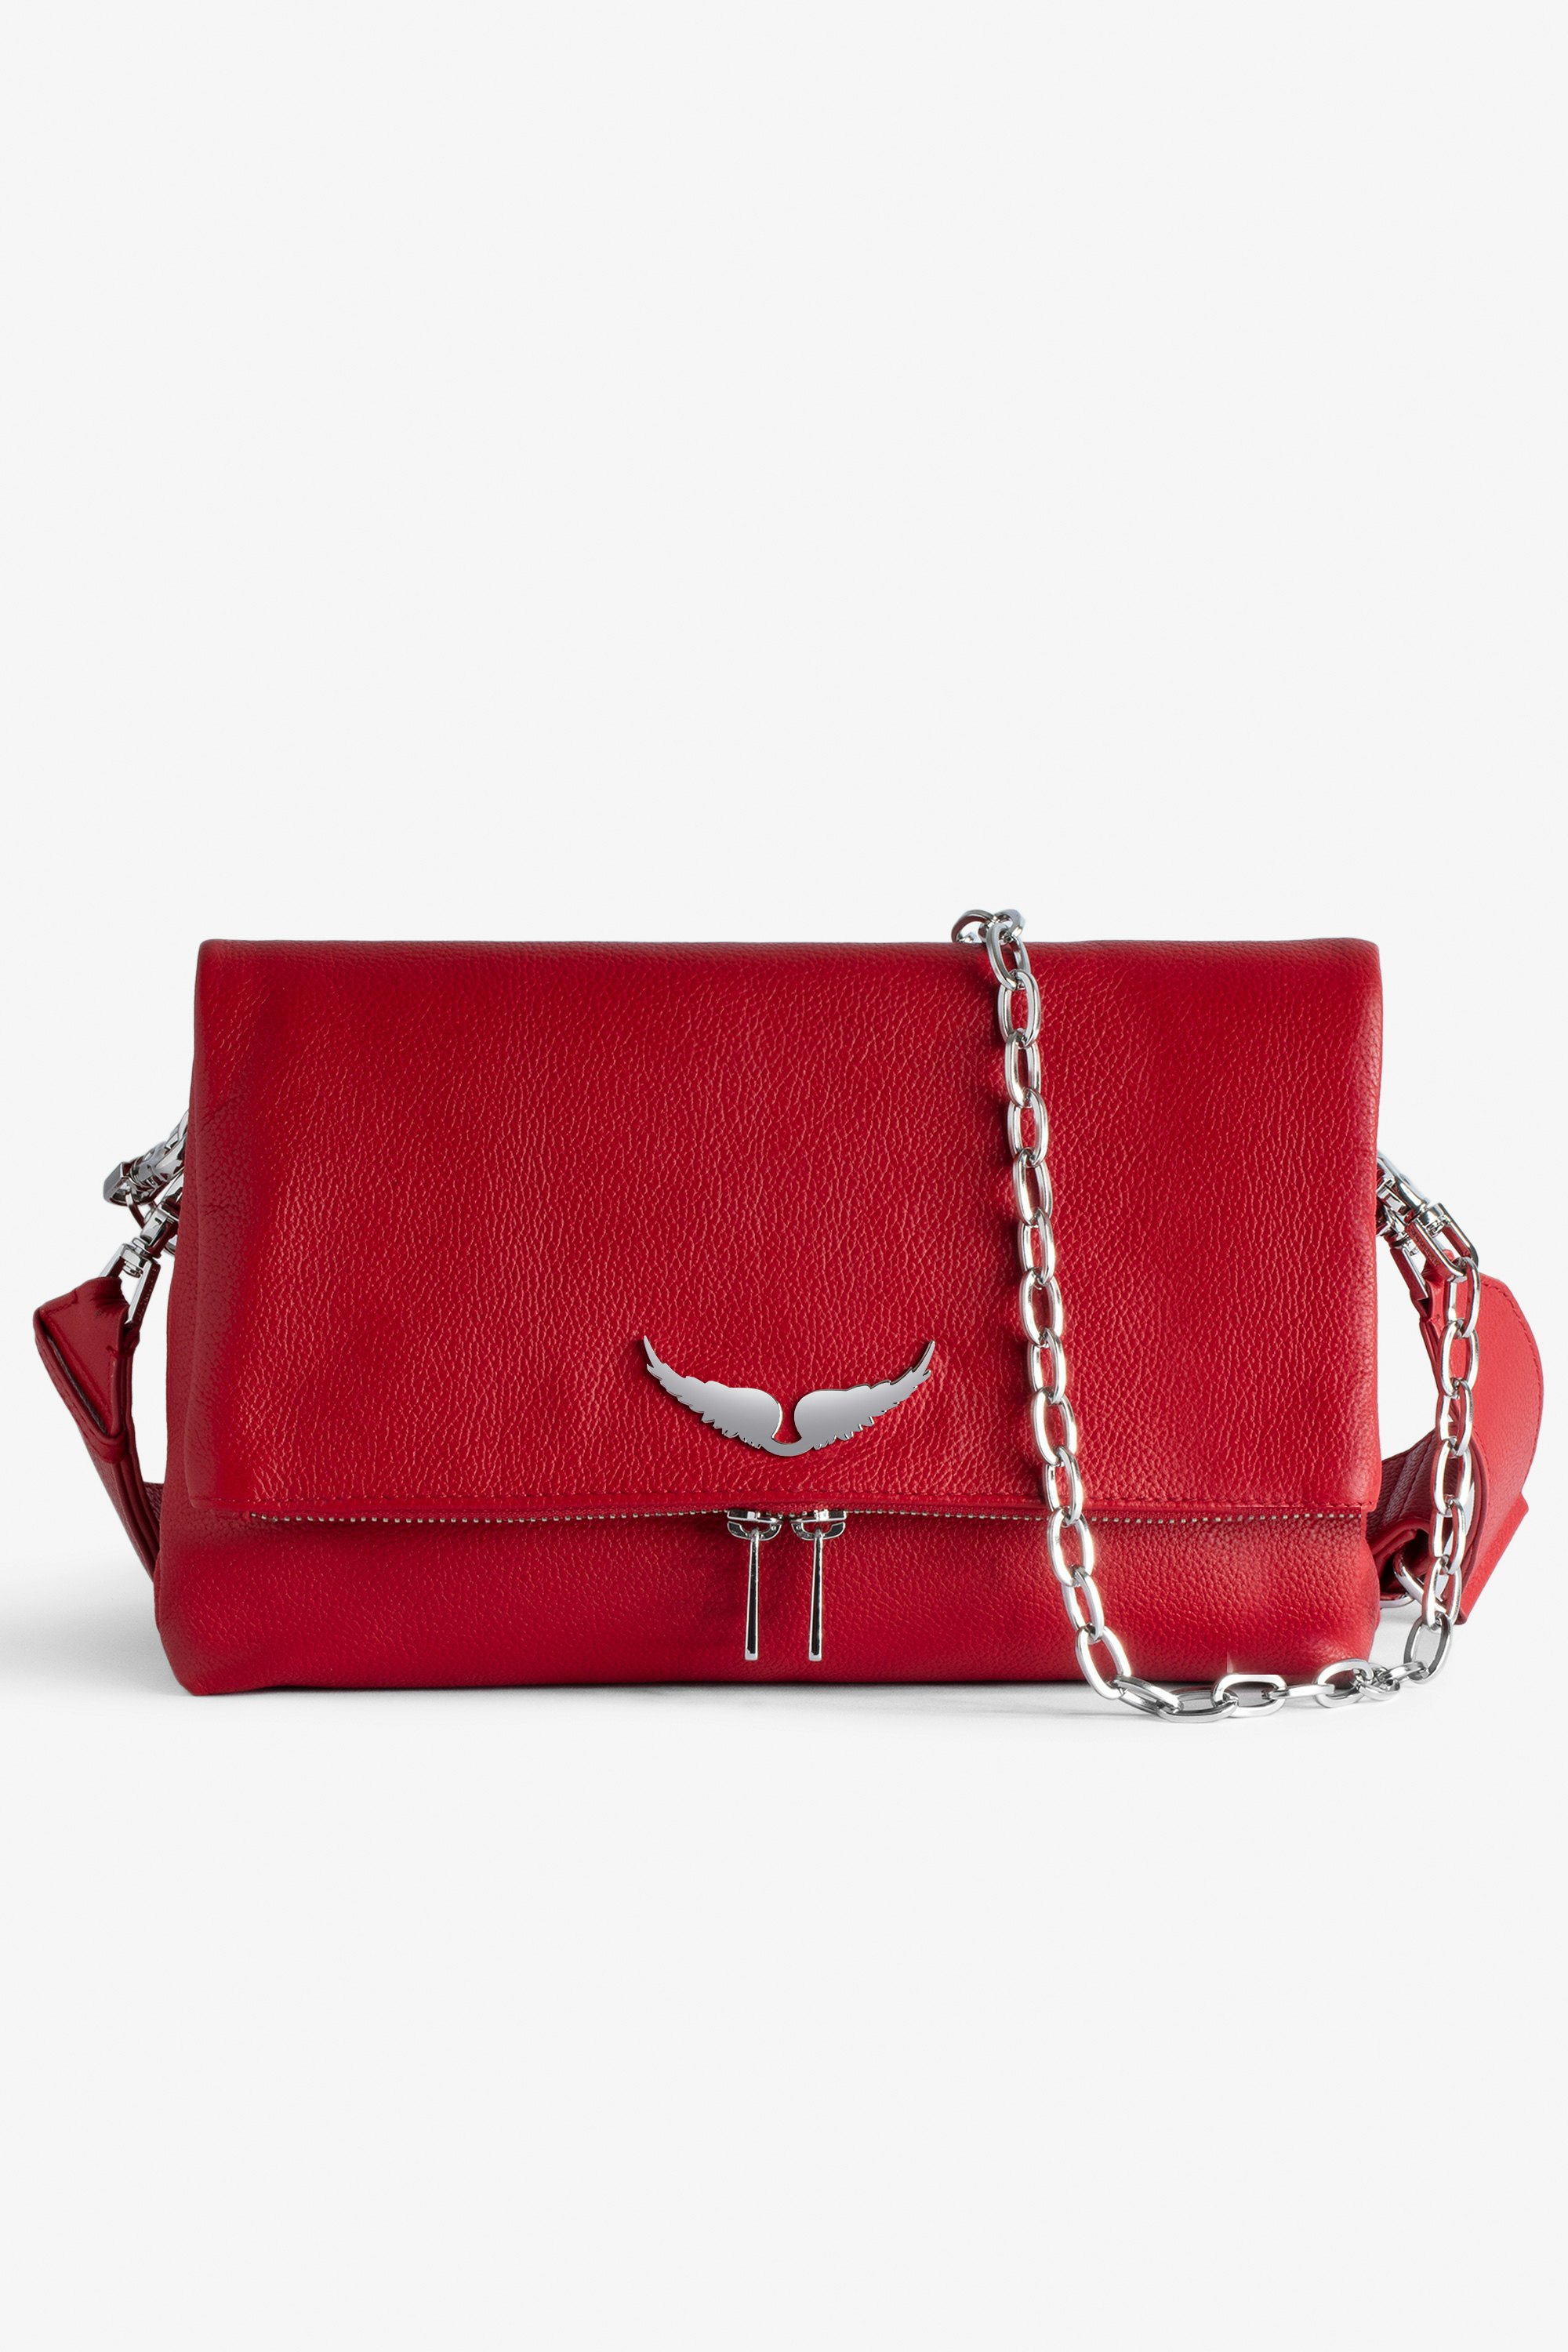 Tasche Rocky Tasche aus genarbtem Leder in Rot mit Schulterriemen und Flügel-Charm für Damen